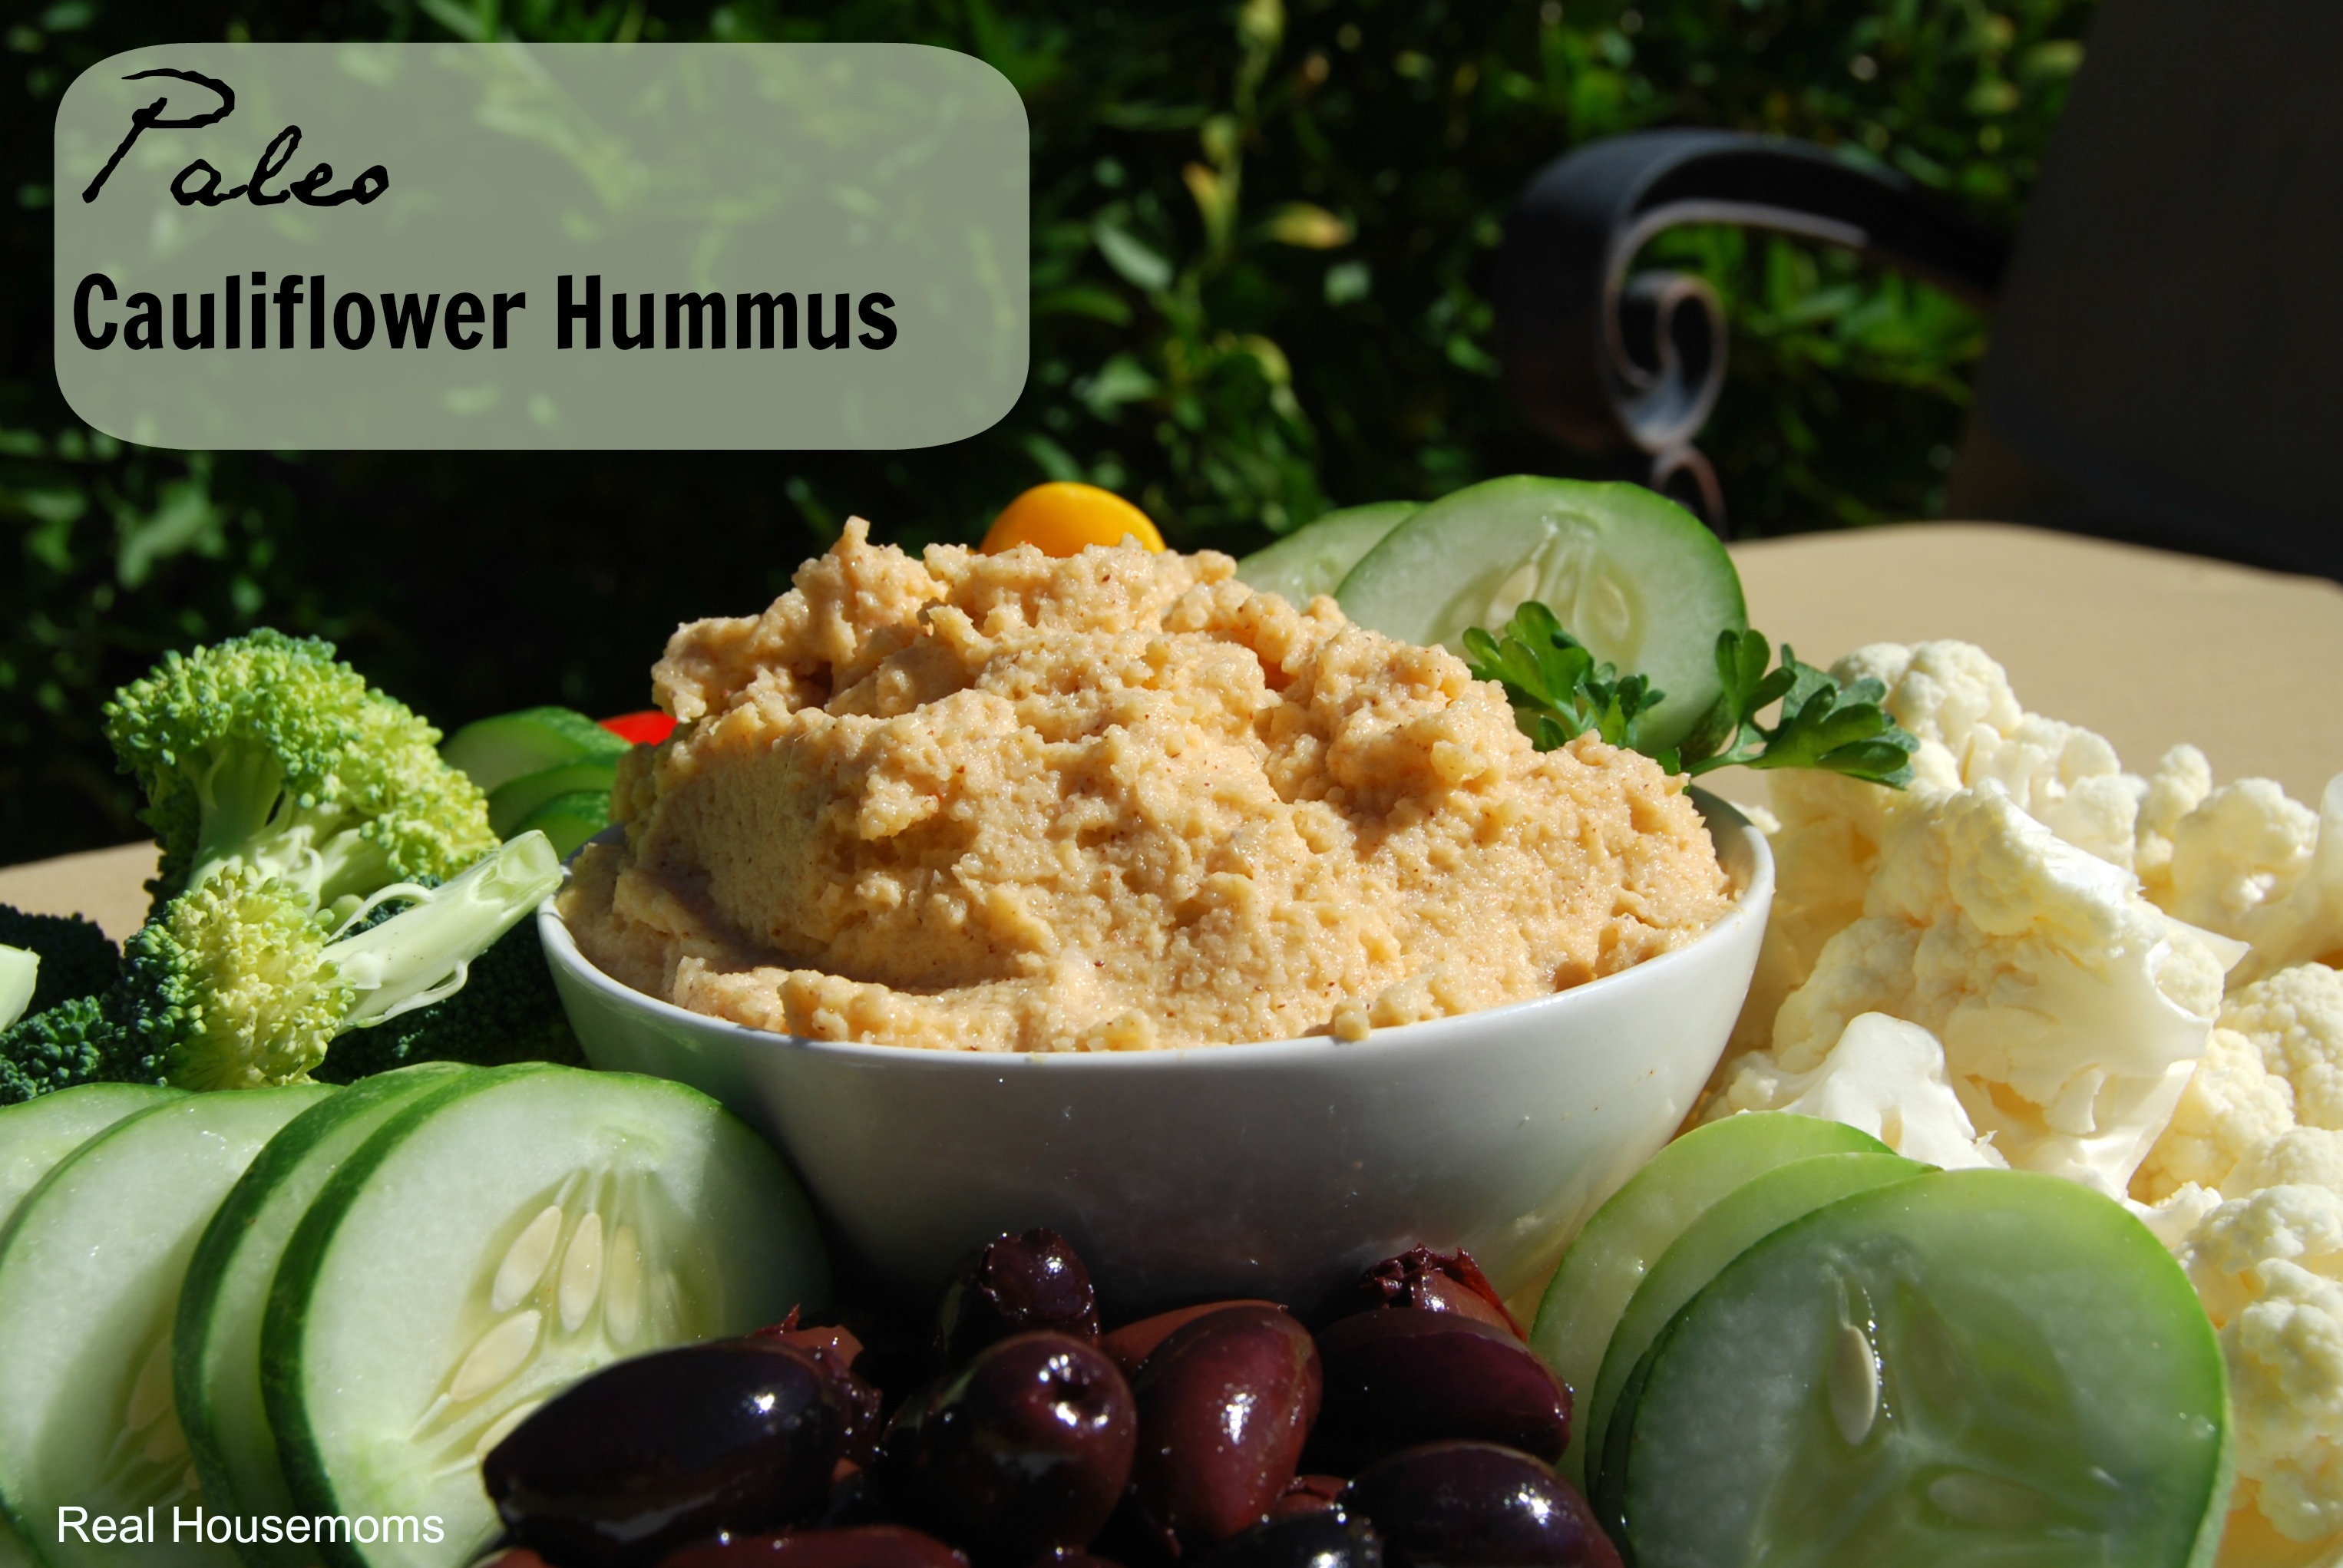 Paleo Cauliflower Hummus